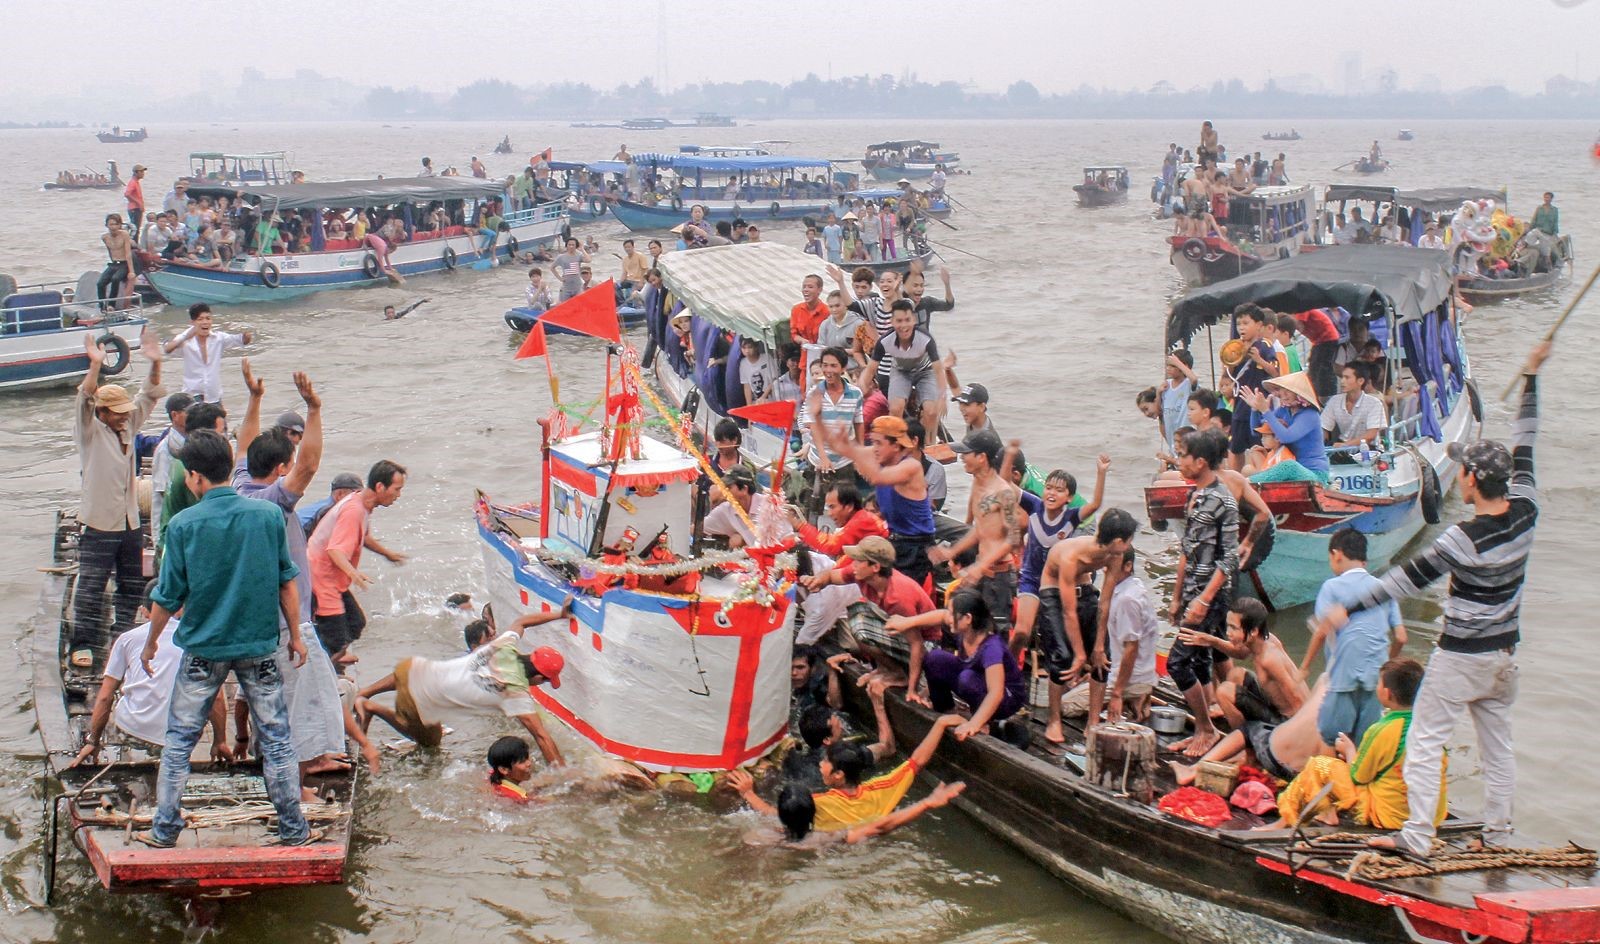 Ở Nam bộ, nhiều lễ hội gắn với nếp sinh hoạt sông nước. Trong ảnh: Người dân Cần Thơ tham gia lễ Tống Phong trên sông Hậu. Ảnh: DUY KHÔI